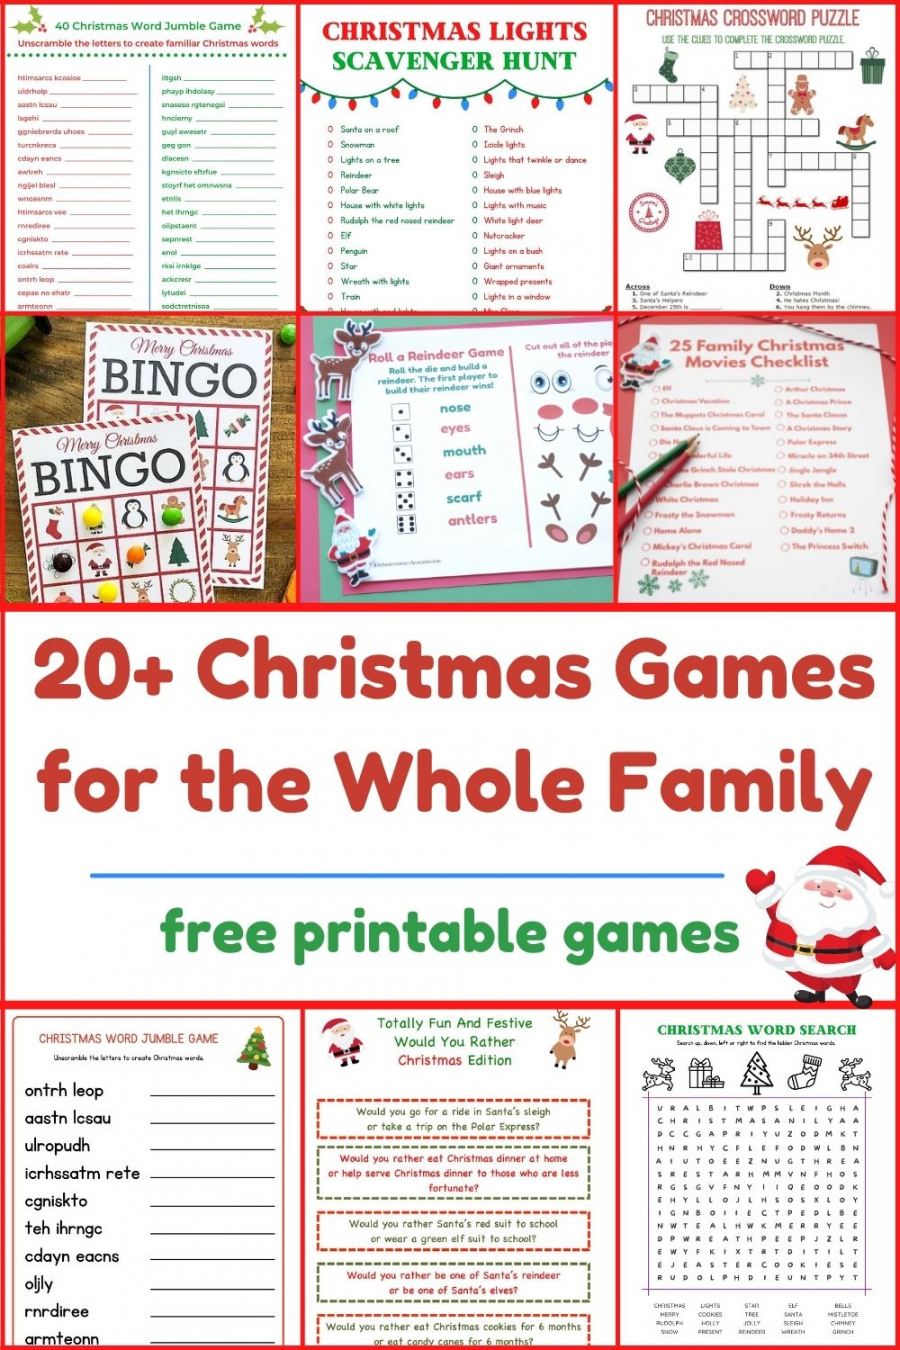 Free Christmas Printable Games - Printable - + Free Printable Christmas Games for the Whole Family